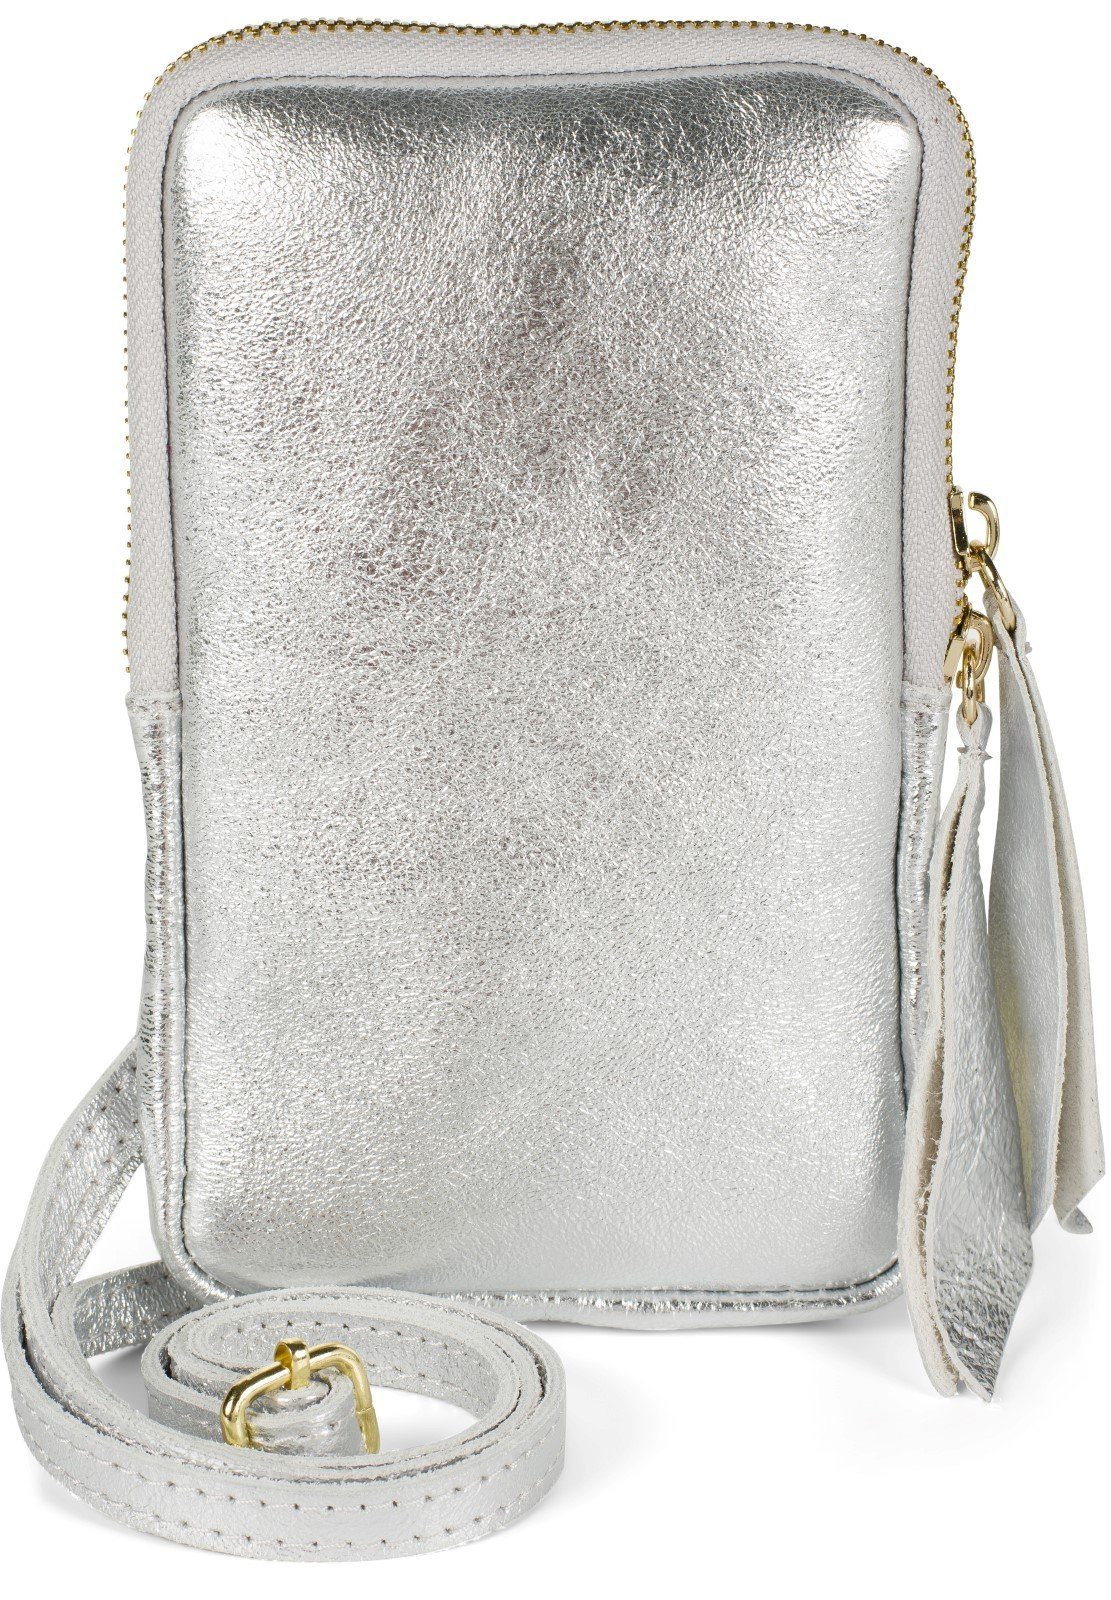 Handtasche in silber online kaufen | OTTO